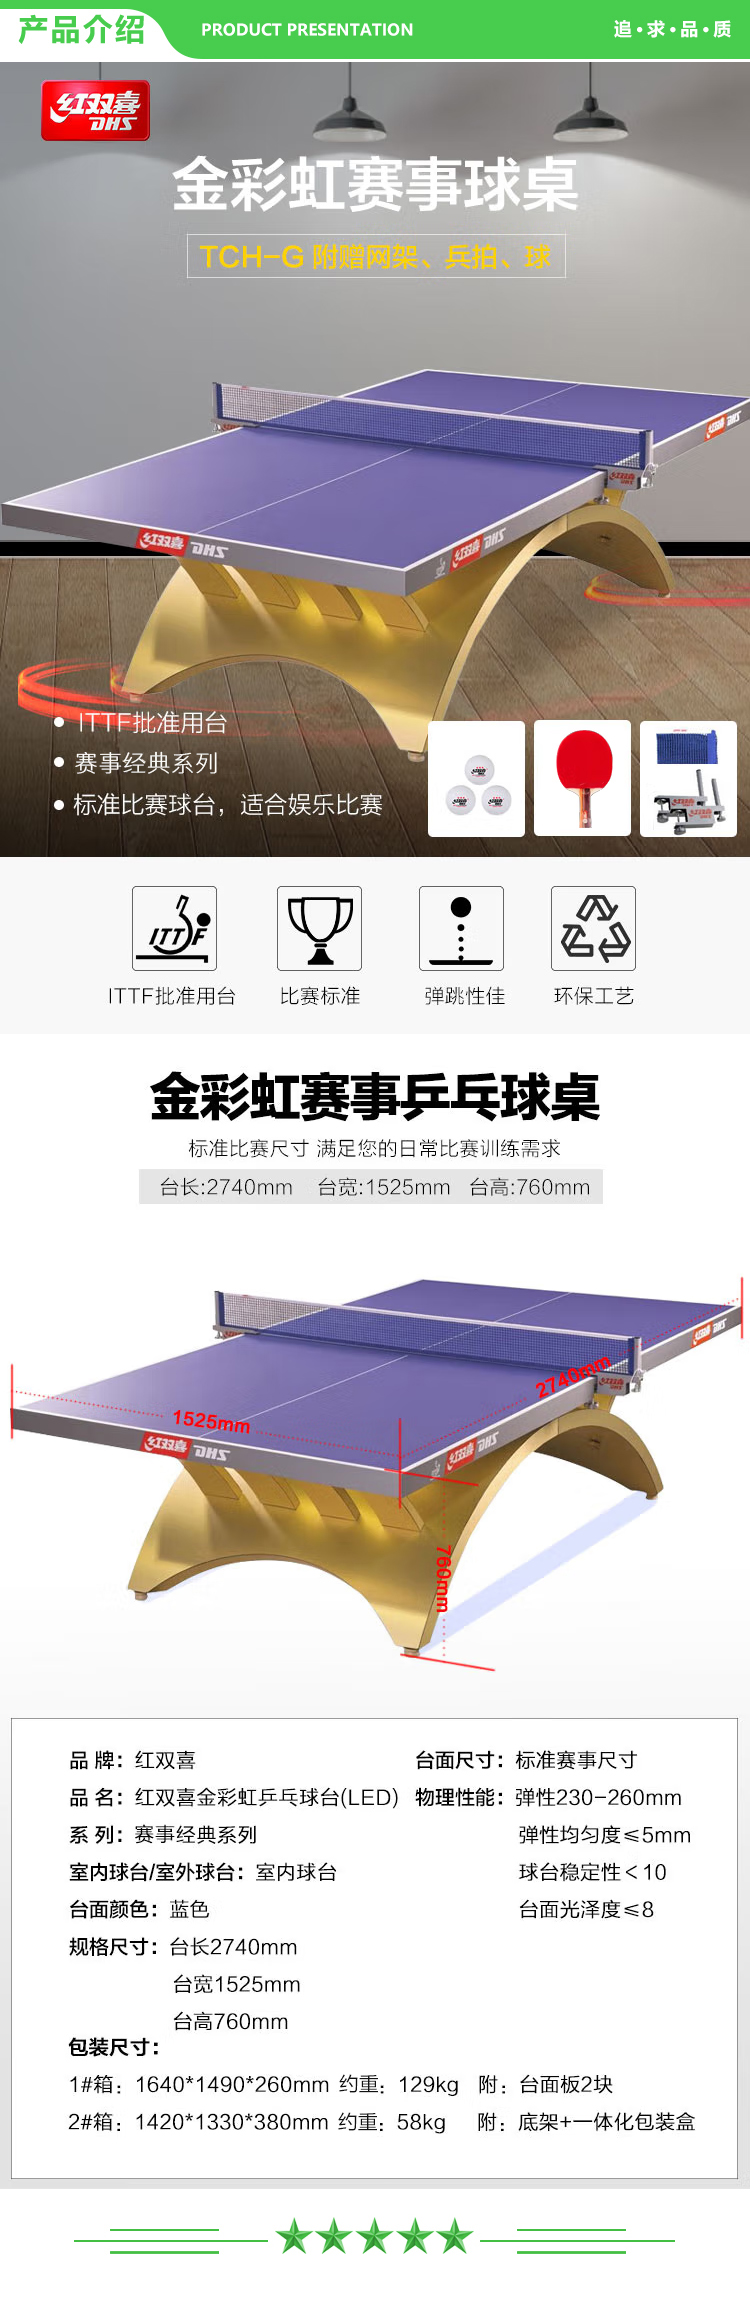 红双喜 DHS TCH-G 乒乓球台 金彩虹大客户专享乒乓球桌  (2).jpg